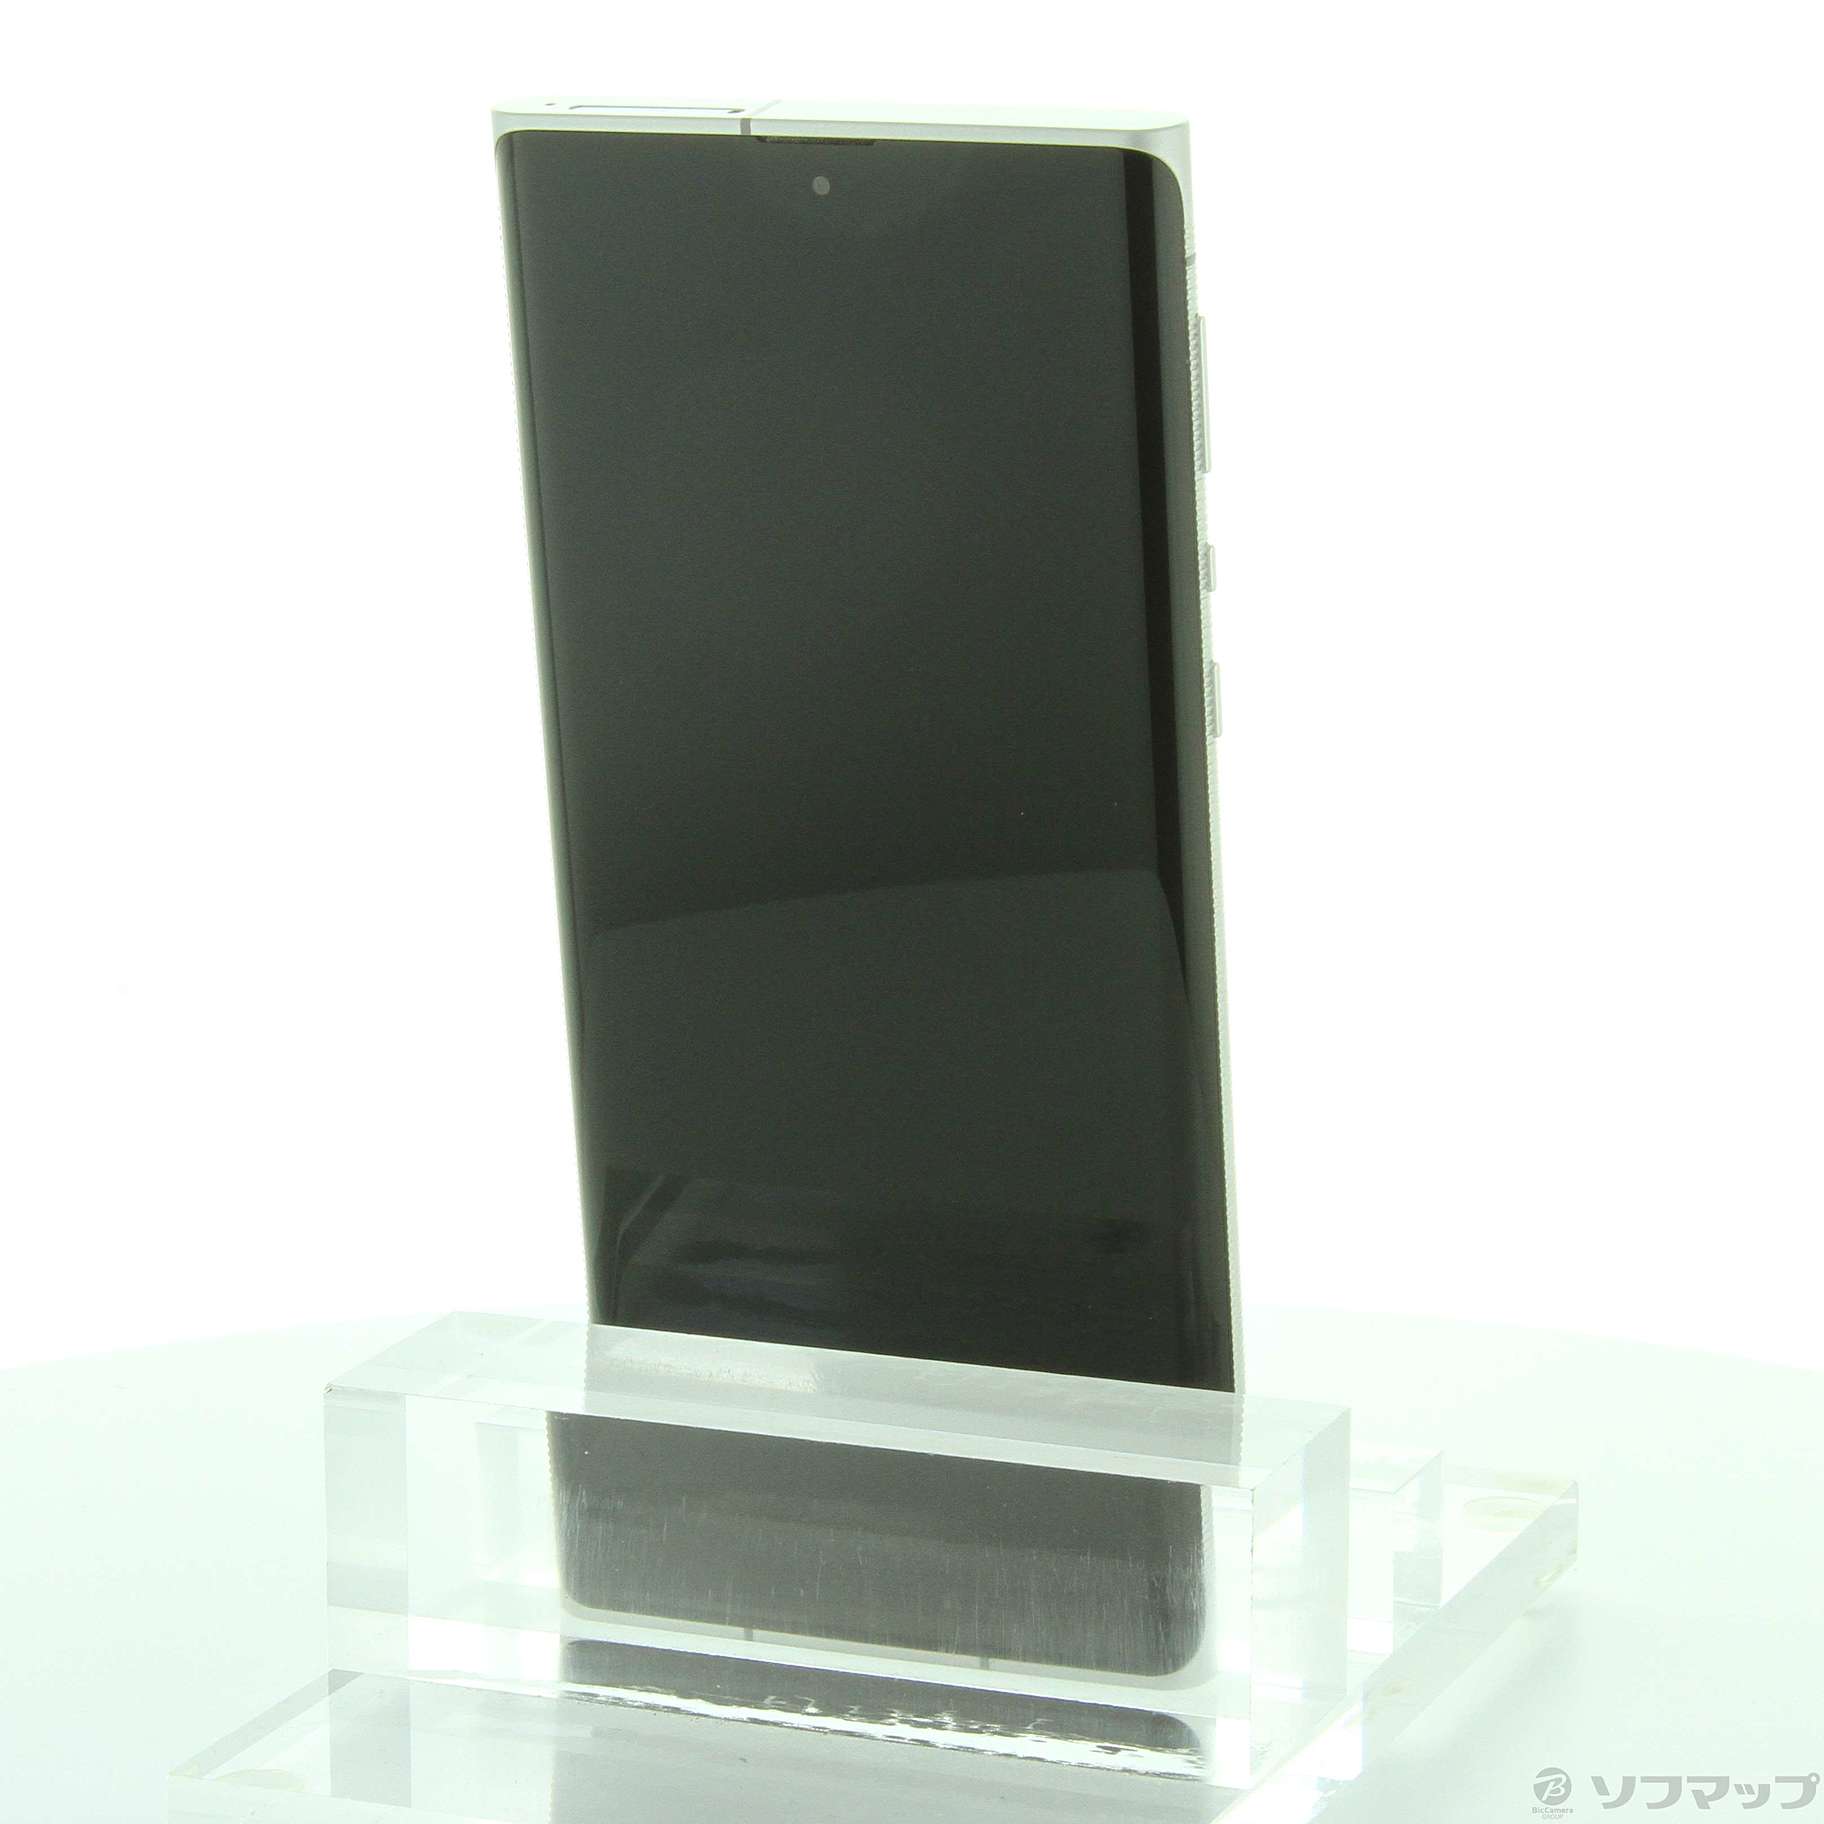 中古品〕 Leitz Phone 1 256GB ライカシルバー LP-01 SoftBank｜の通販 ...